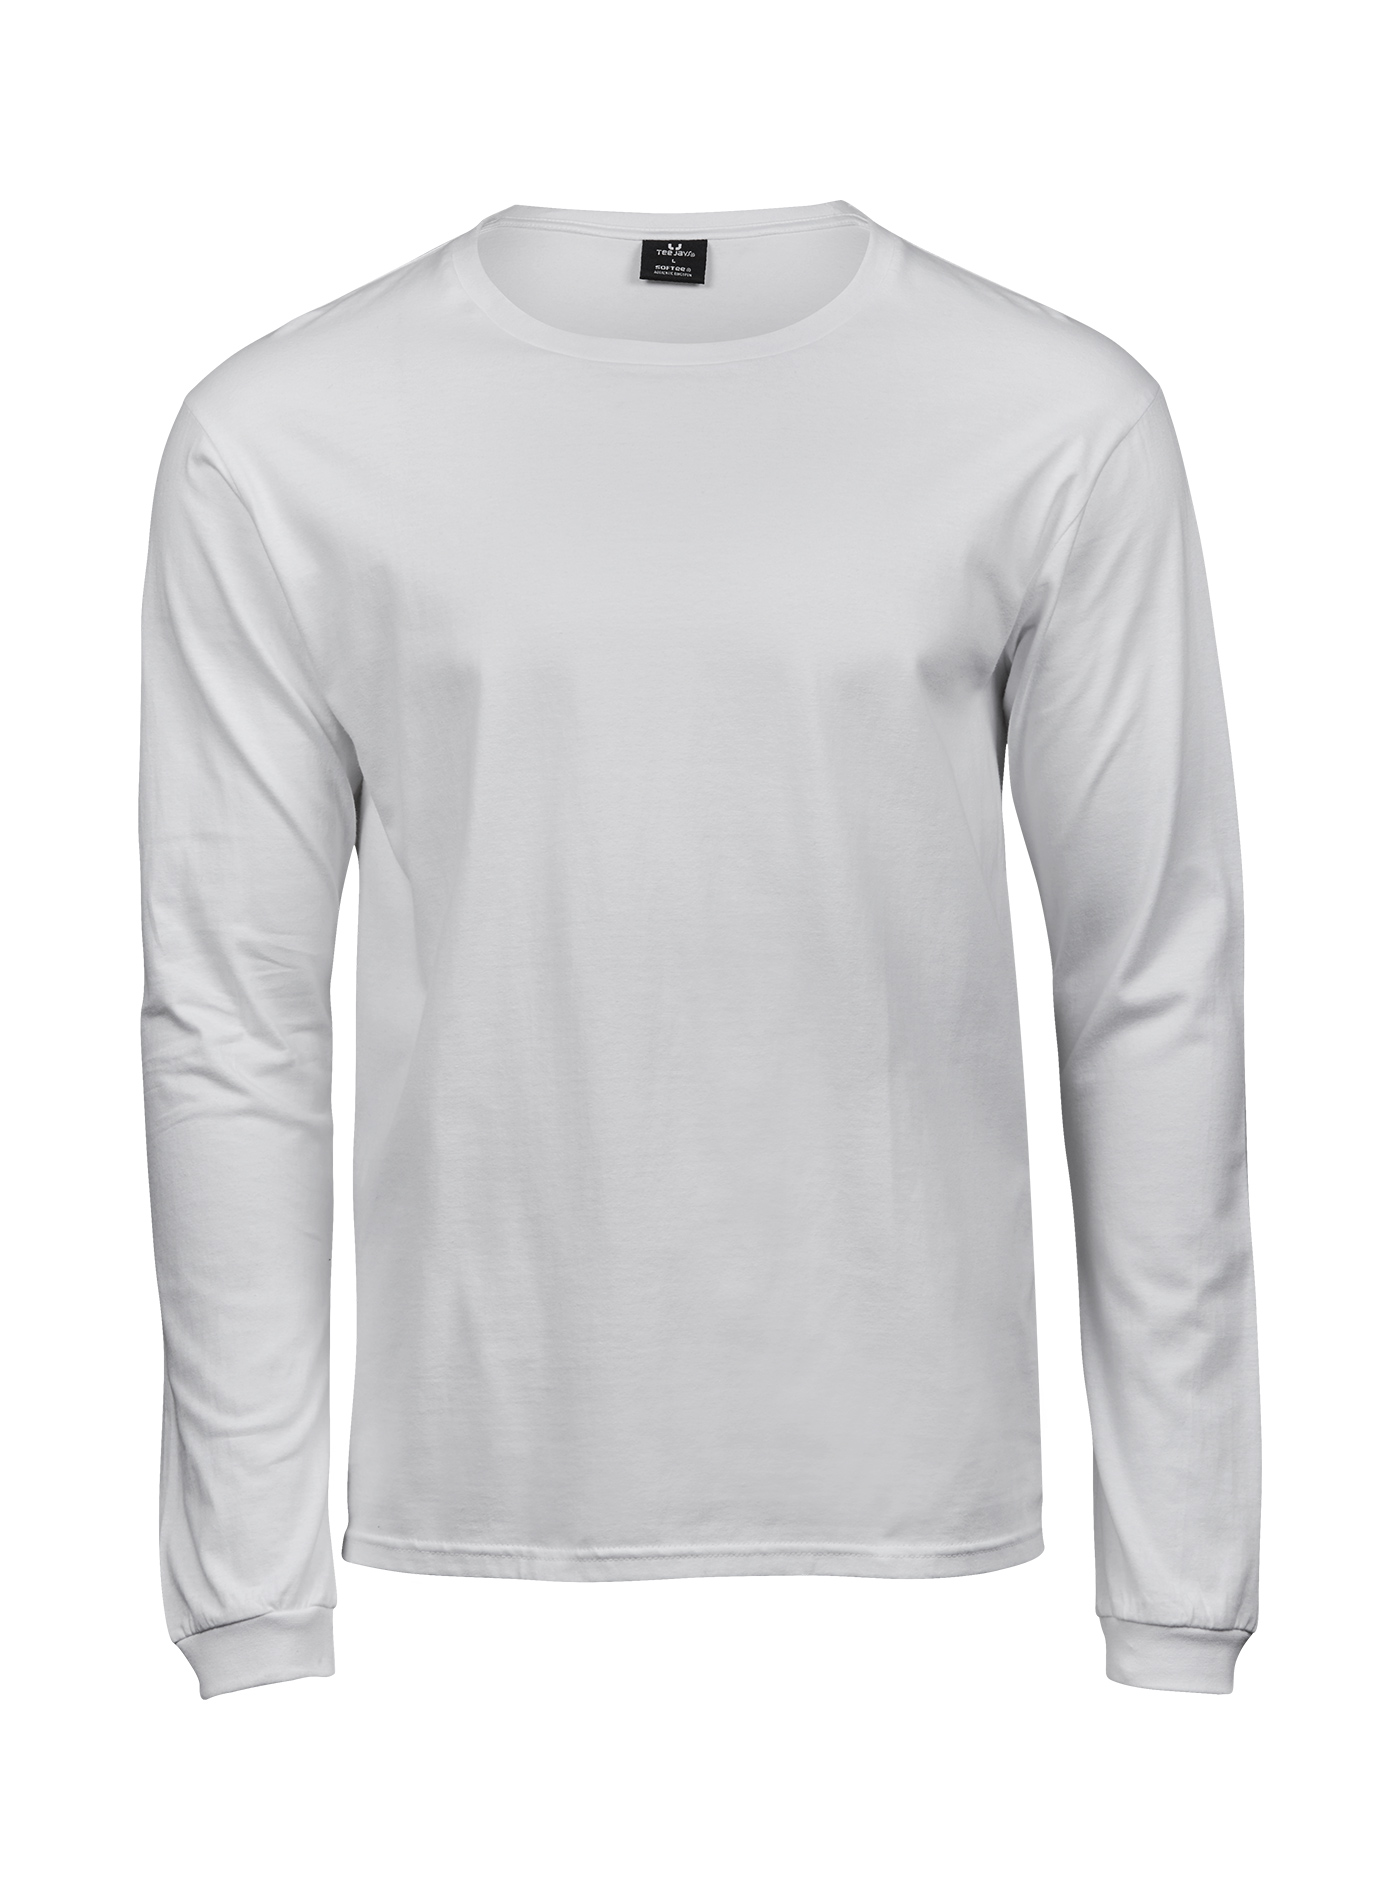 Pánské tričko s dlouhým rukávem Tee Jays Sof-Tee - Bílá 4XL